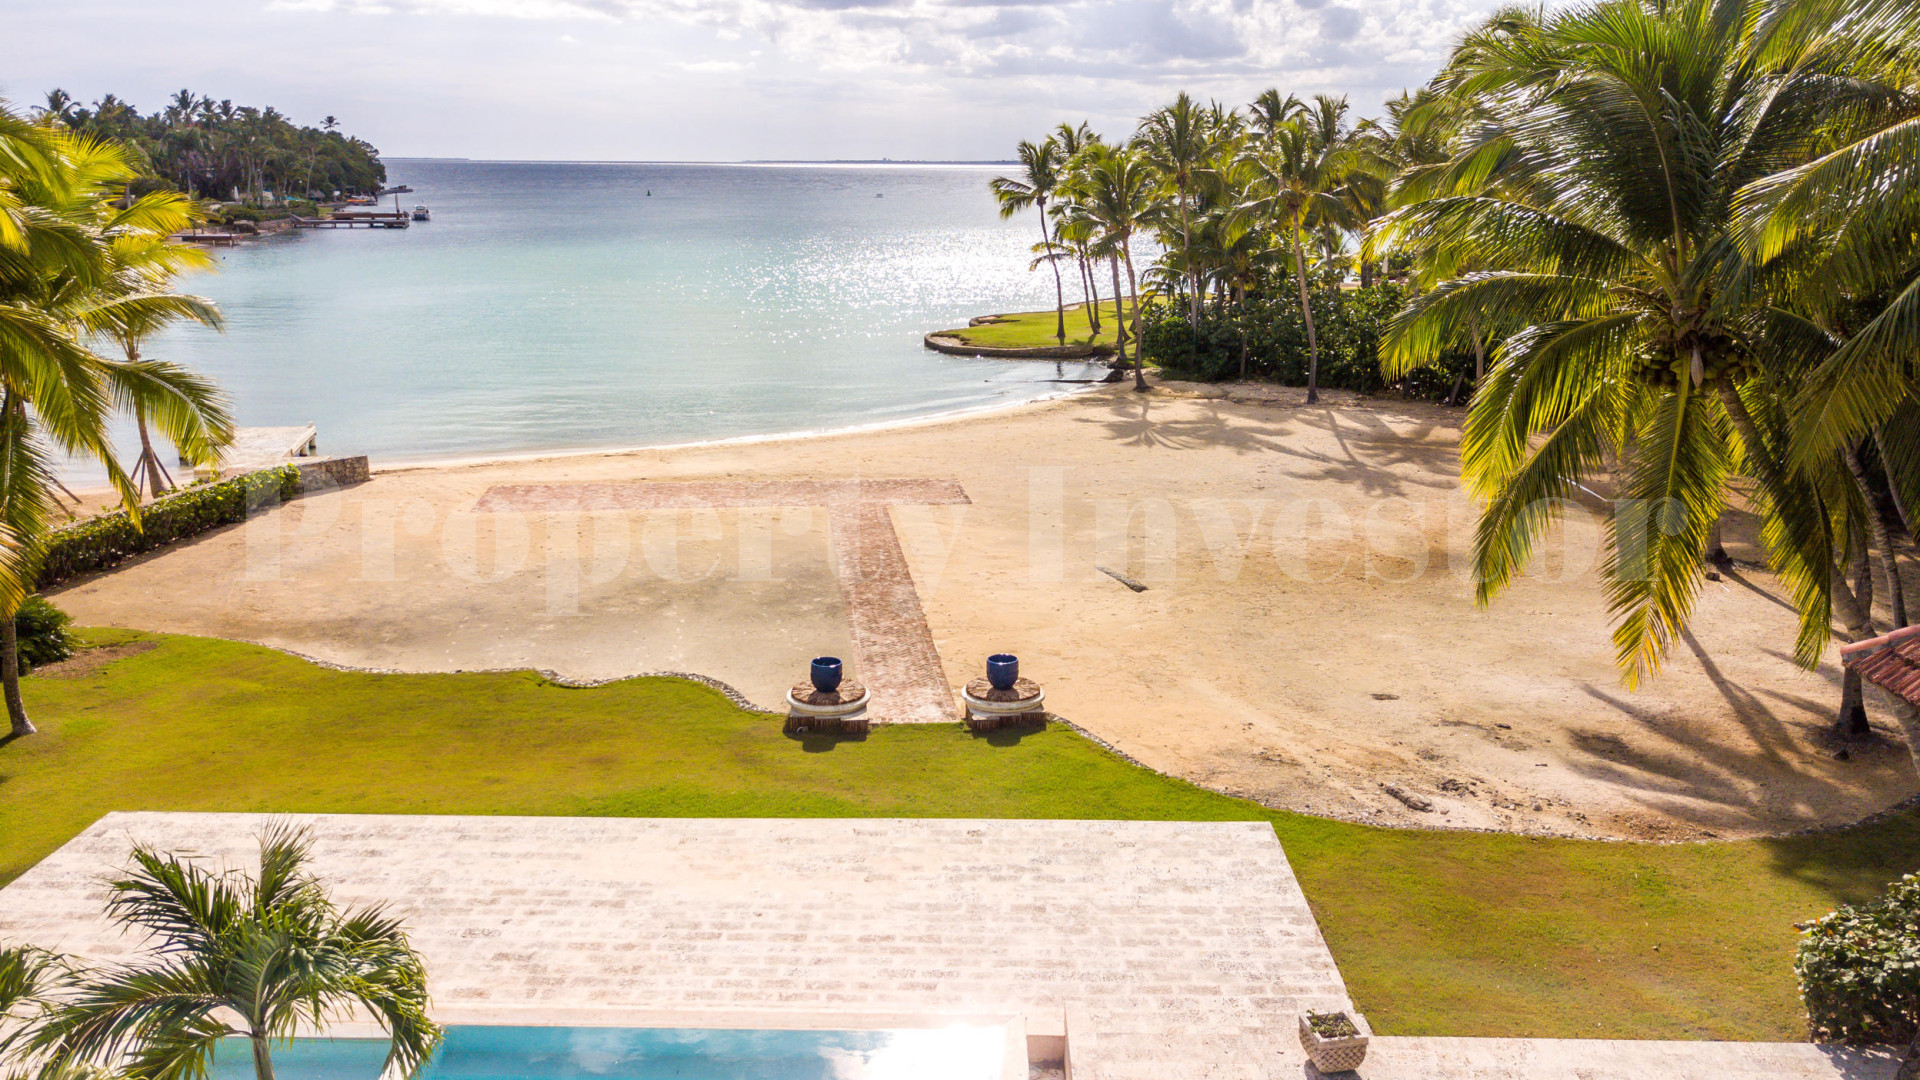 Incredible 7 Bedroom Beachfront Luxury Villa with Immense 13,240 m² Lot for Sale in Casa de Campo, the Dominican Republic